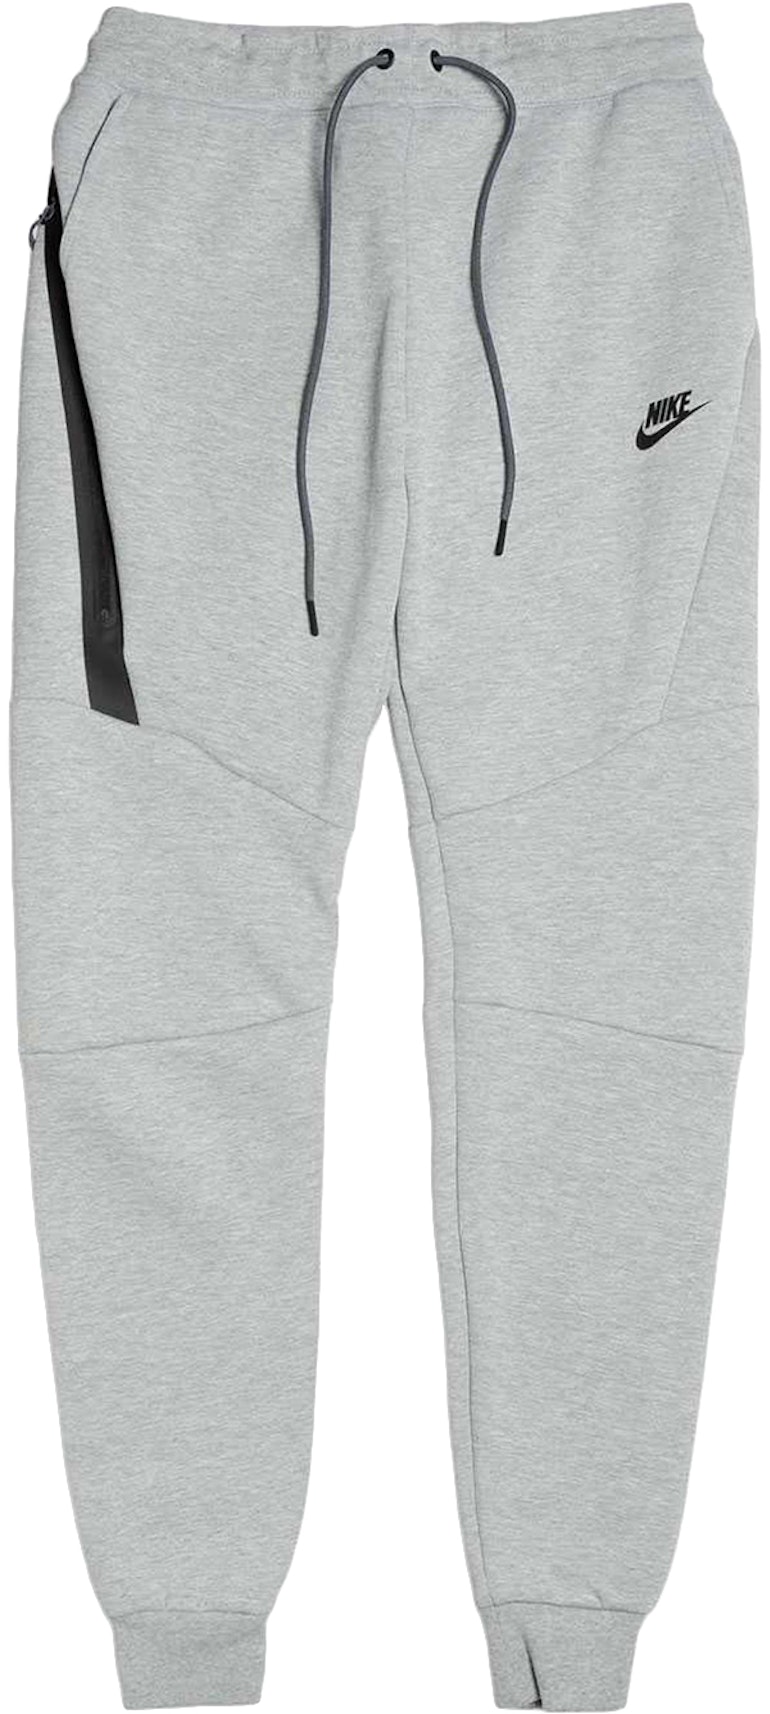 Nike Tech Fleece Pant Grey/Black Men's -